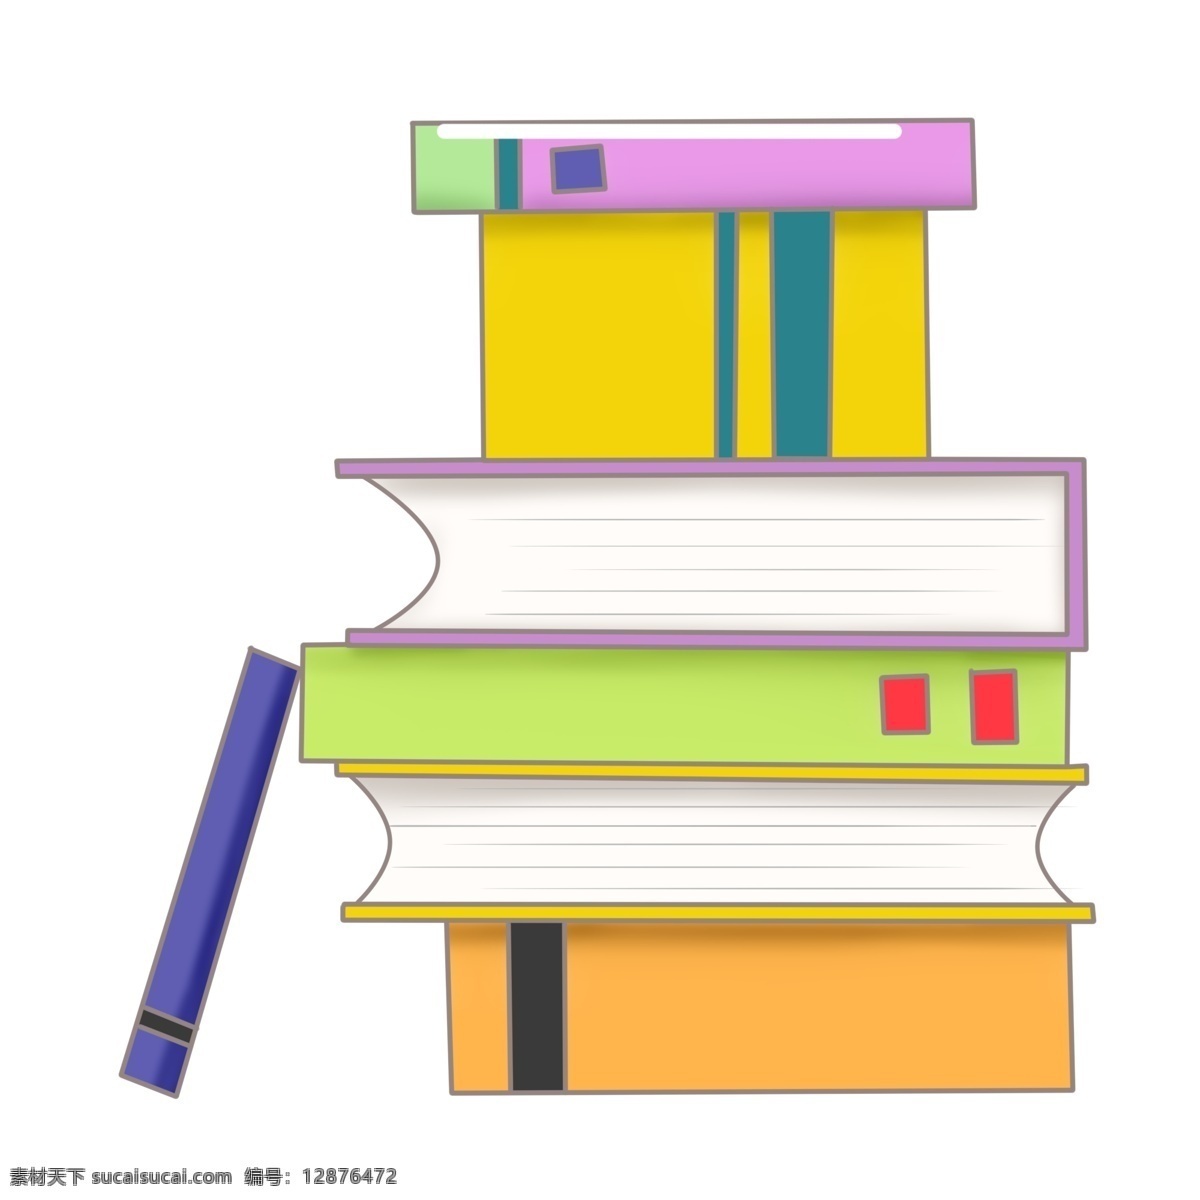 摞 彩色 教科书 插画 书本 学习书本 绿色书本 黄色书本 蓝色书本 红色书本 一摞书 彩色教科书